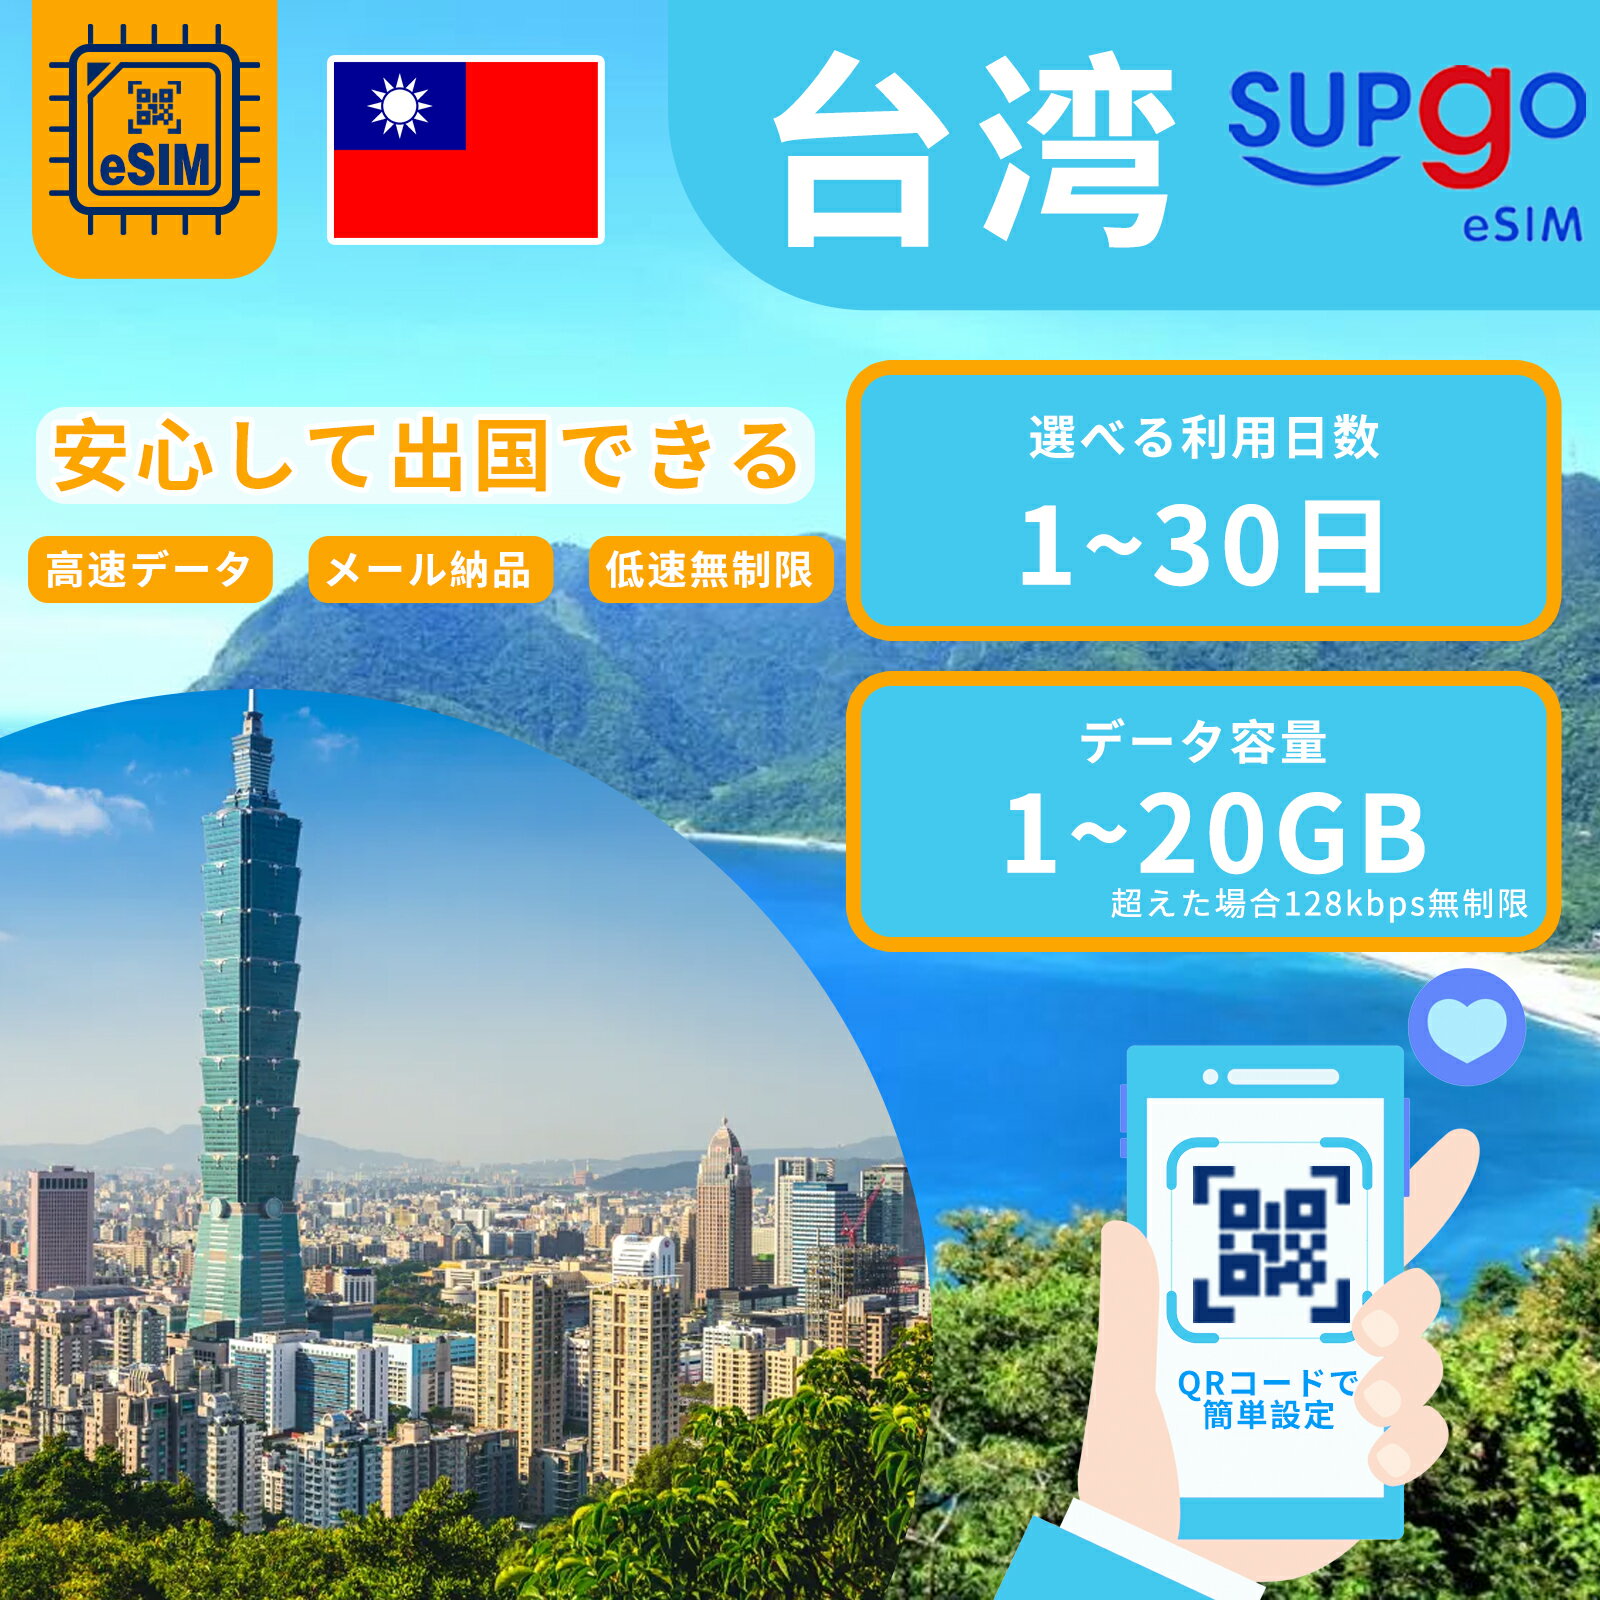 eSIM 台湾 台北 esimカード 1~20GB 超高速 データ Wi-Fiよりも圧倒的に速い 3日間 5日間 7日間 10日間 15日間 20日間 30日間 プリペイ..